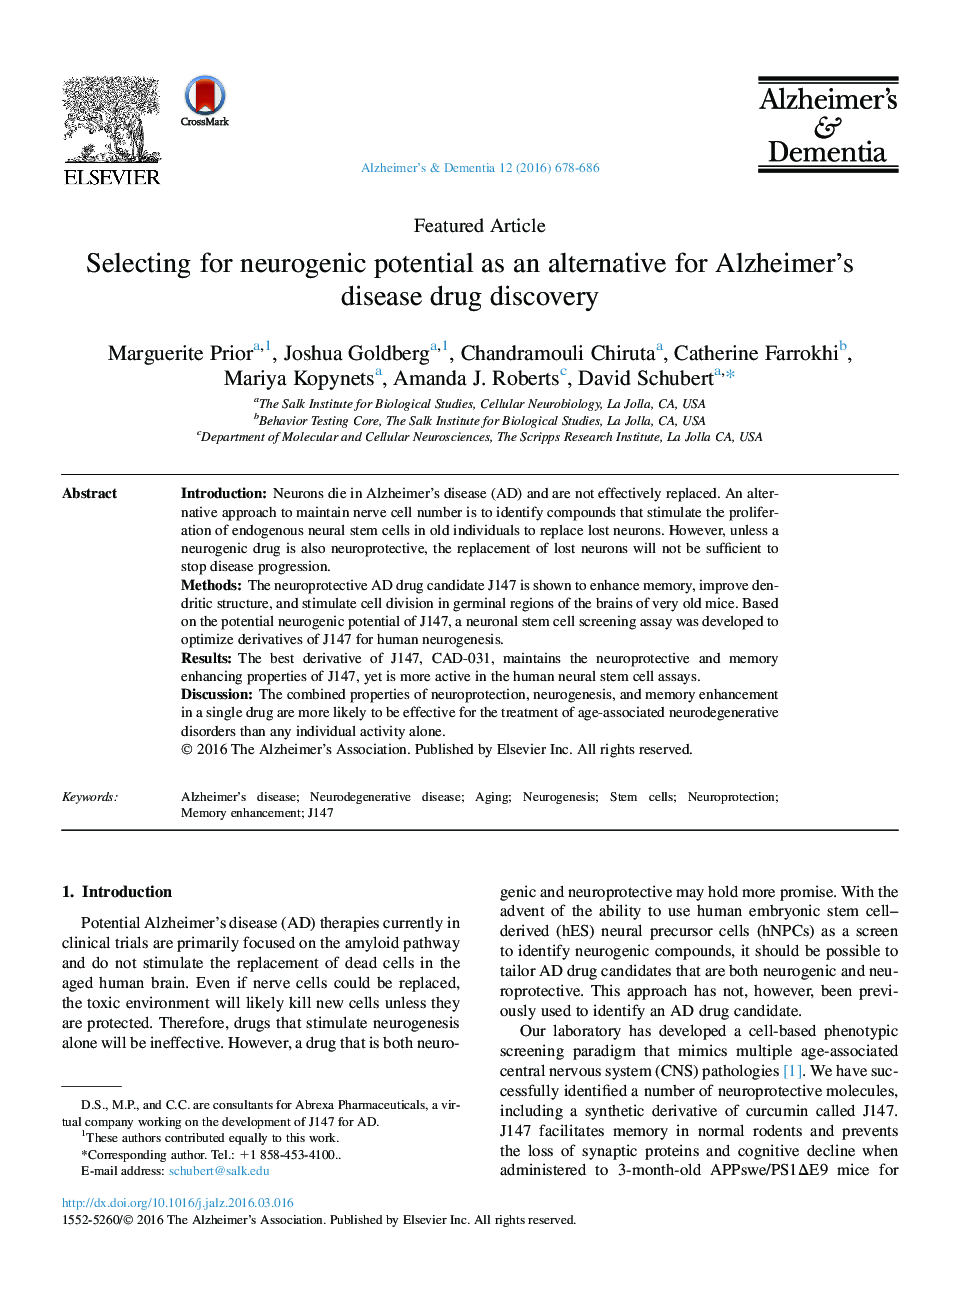 مقاله ویژه برای انتخاب پتانسیل نورولوژیک به عنوان یک جایگزین برای داروهای آلزایمر دارو؟ کشف 